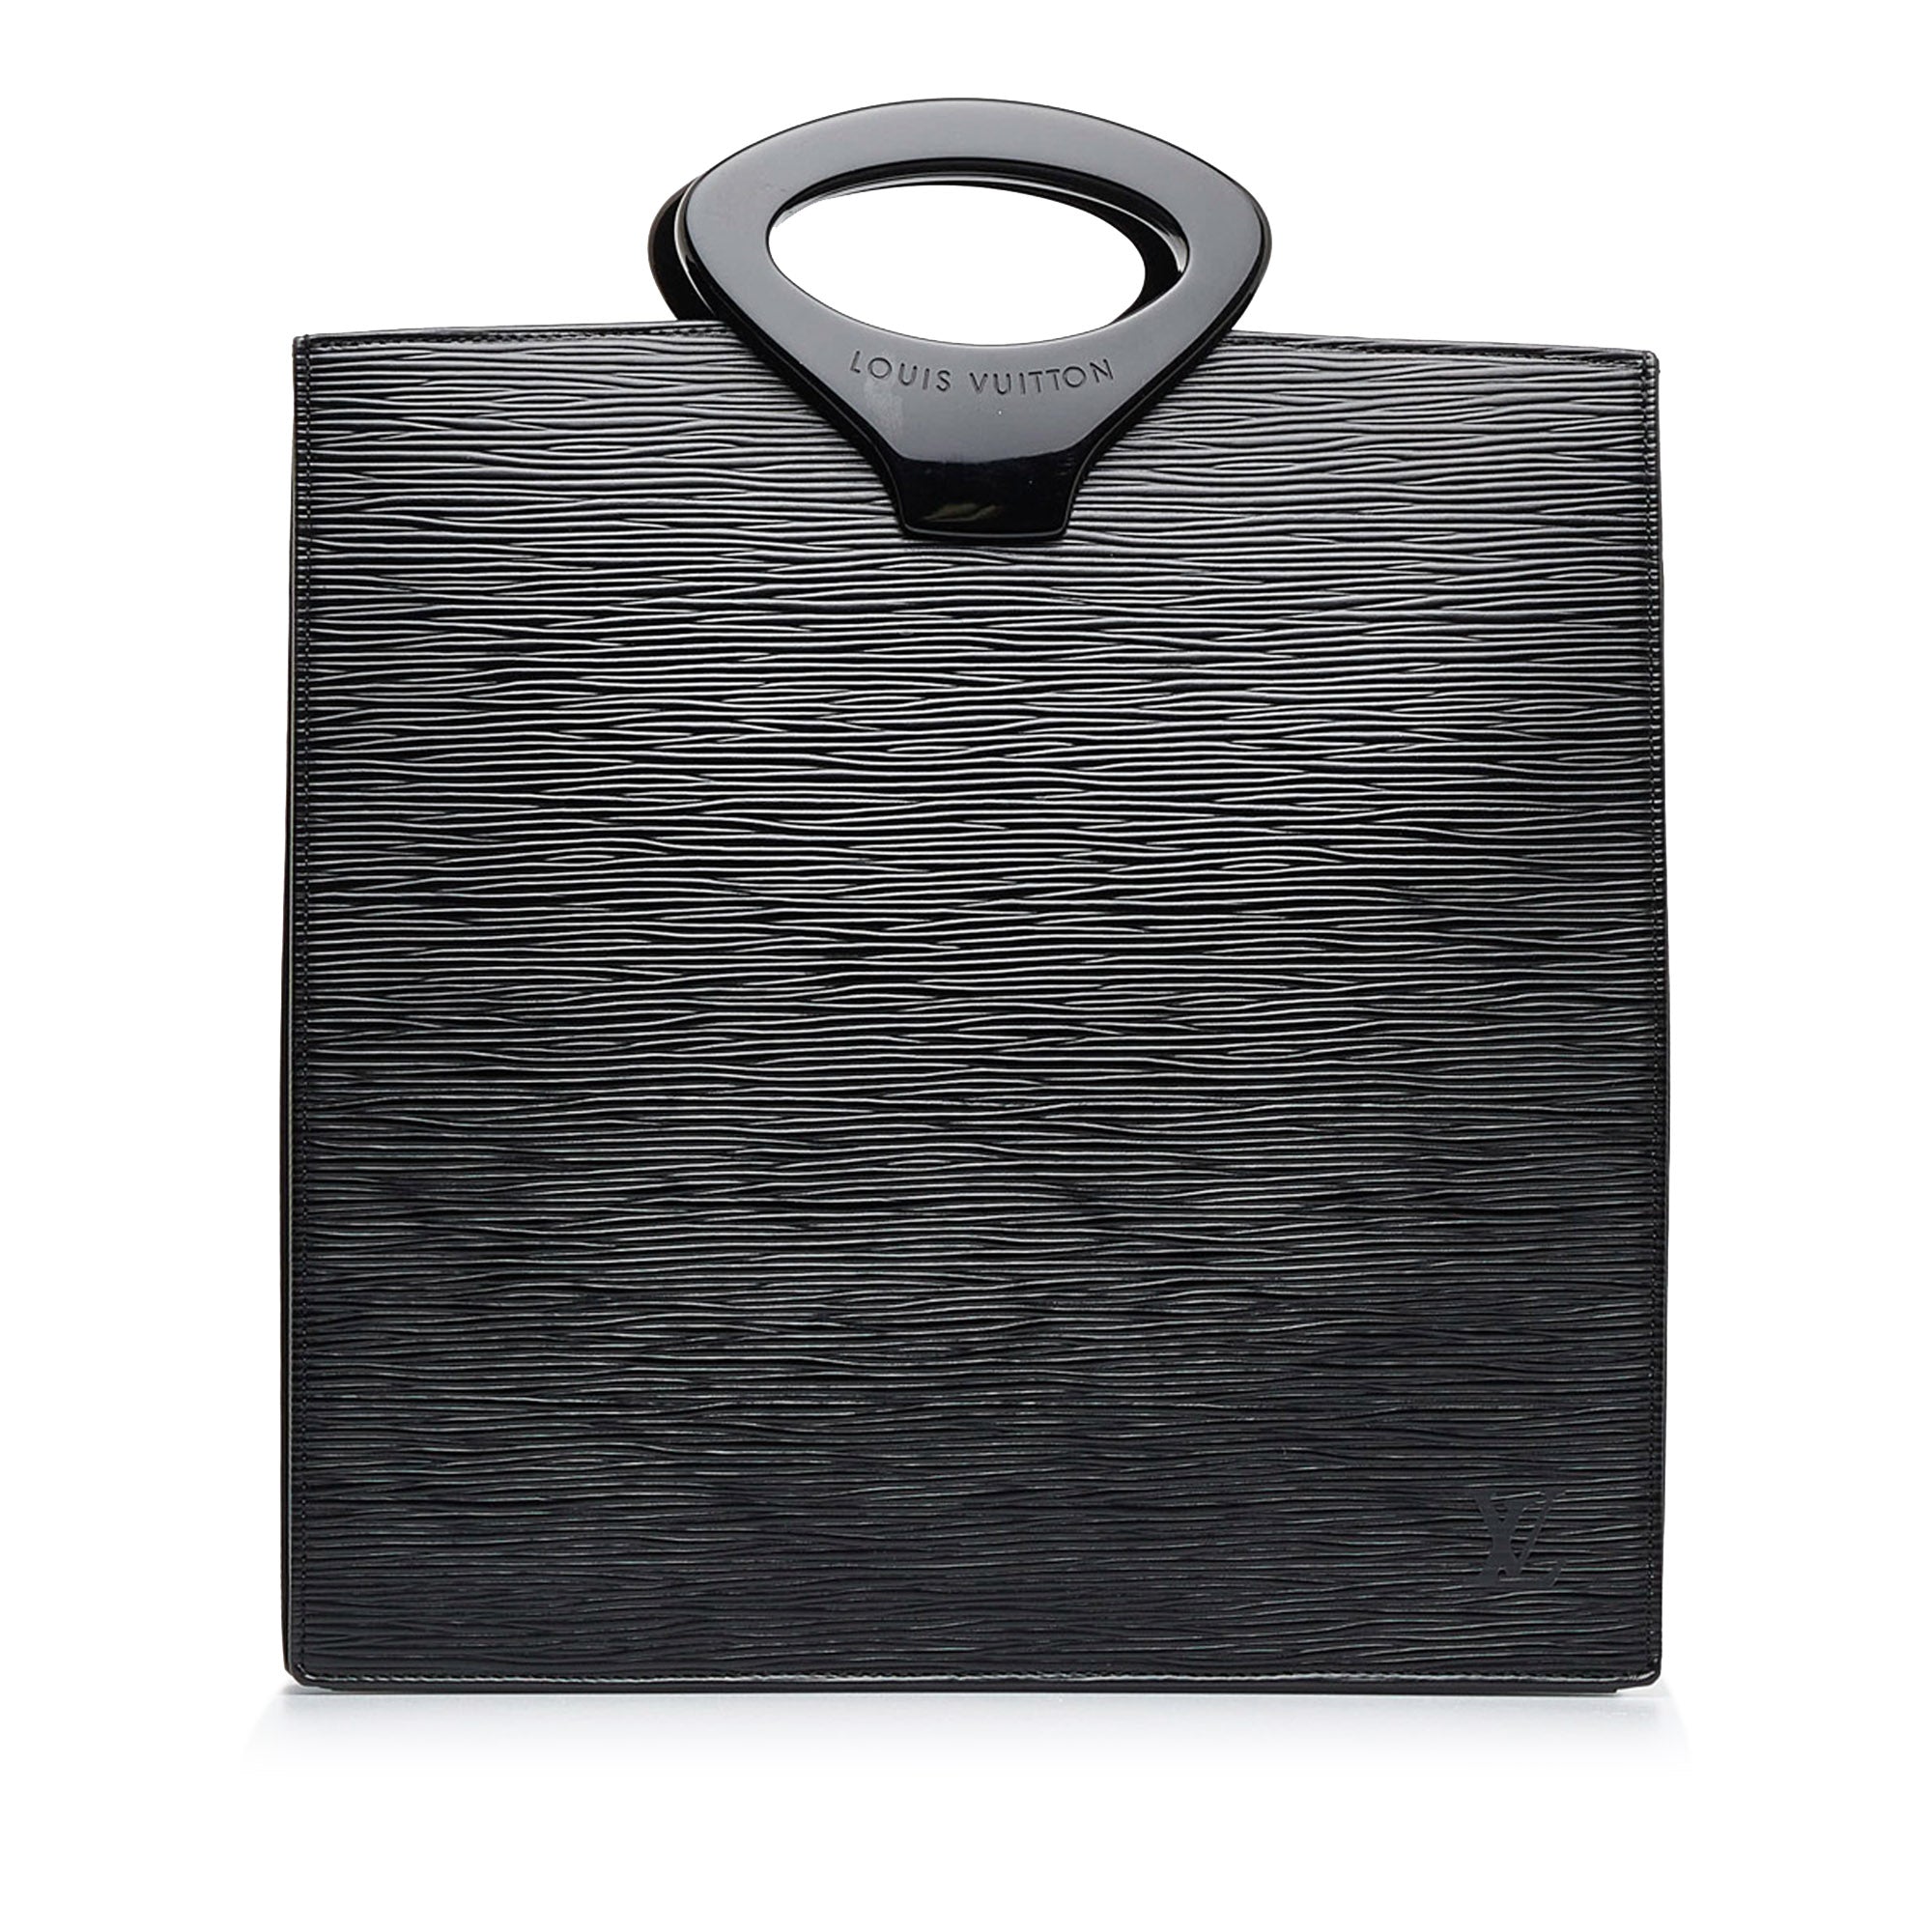 Louis Vuitton Epi Leather Ombre Bag - Black Handle Bags, Handbags